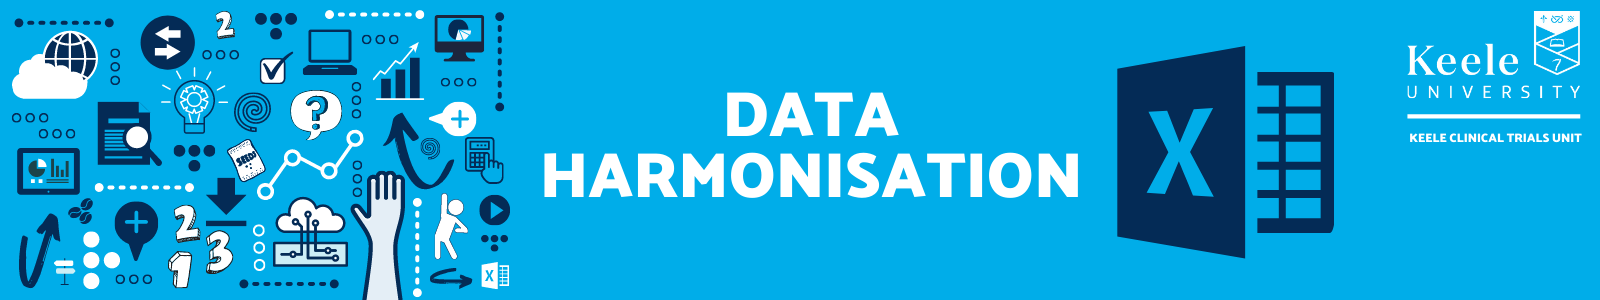 Data Harmonisation